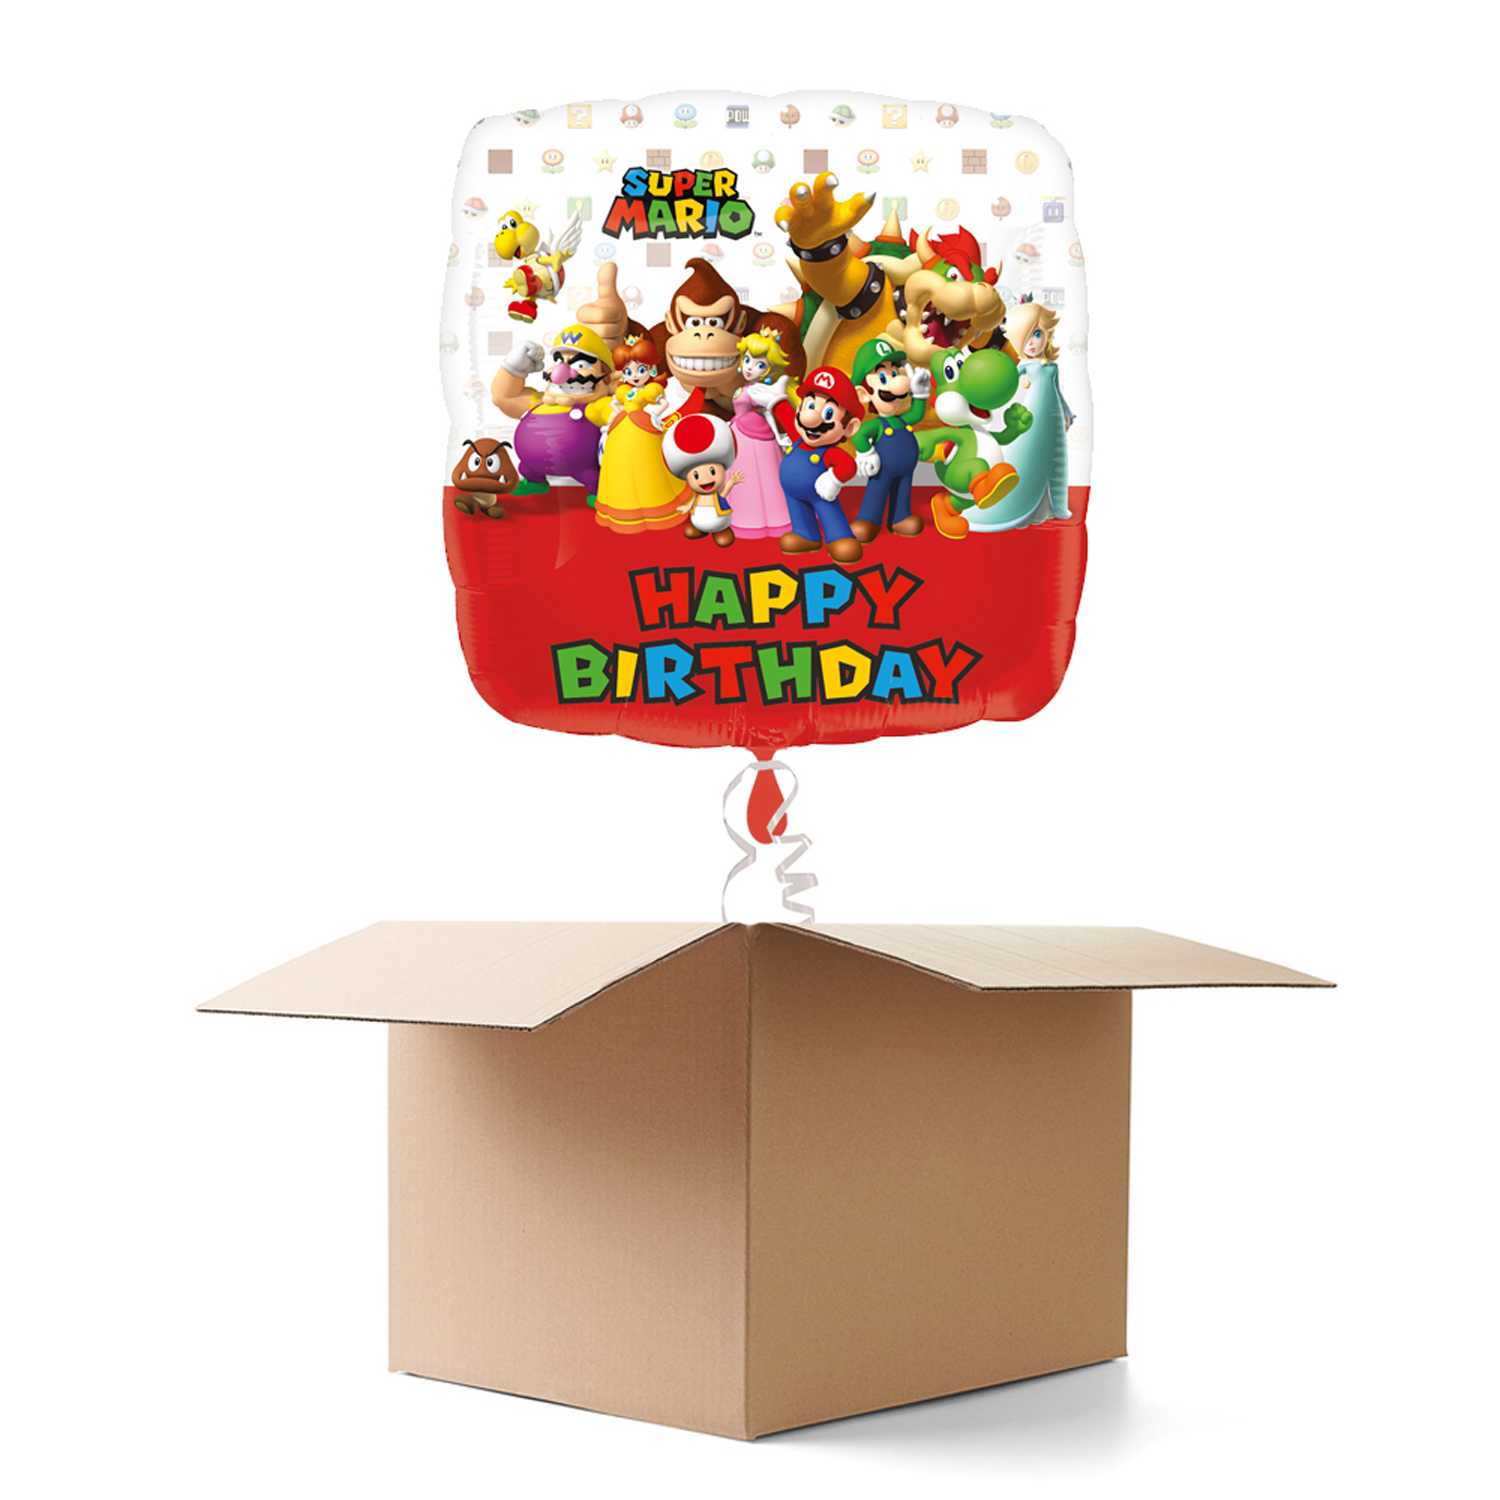 NEU Ballongrsse Mario Bros Happy Birthday, 1 Ballon